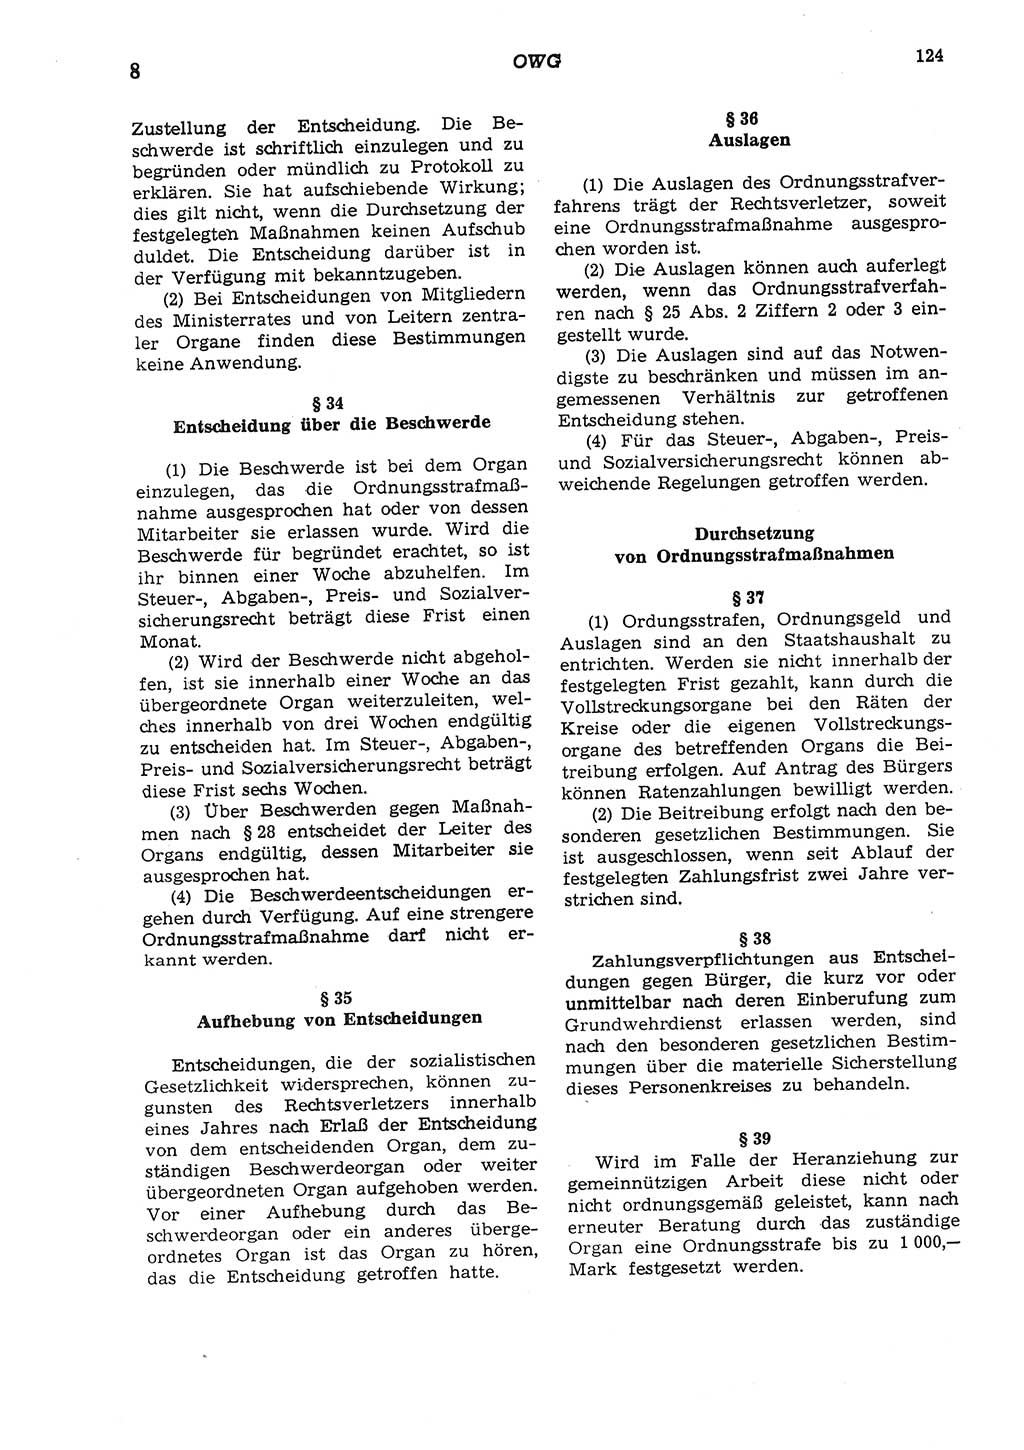 Strafgesetzbuch (StGB) der Deutschen Demokratischen Republik (DDR) und angrenzende Gesetze und Bestimmungen 1975, Seite 124 (StGB DDR Ges. Best. 1975, S. 124)